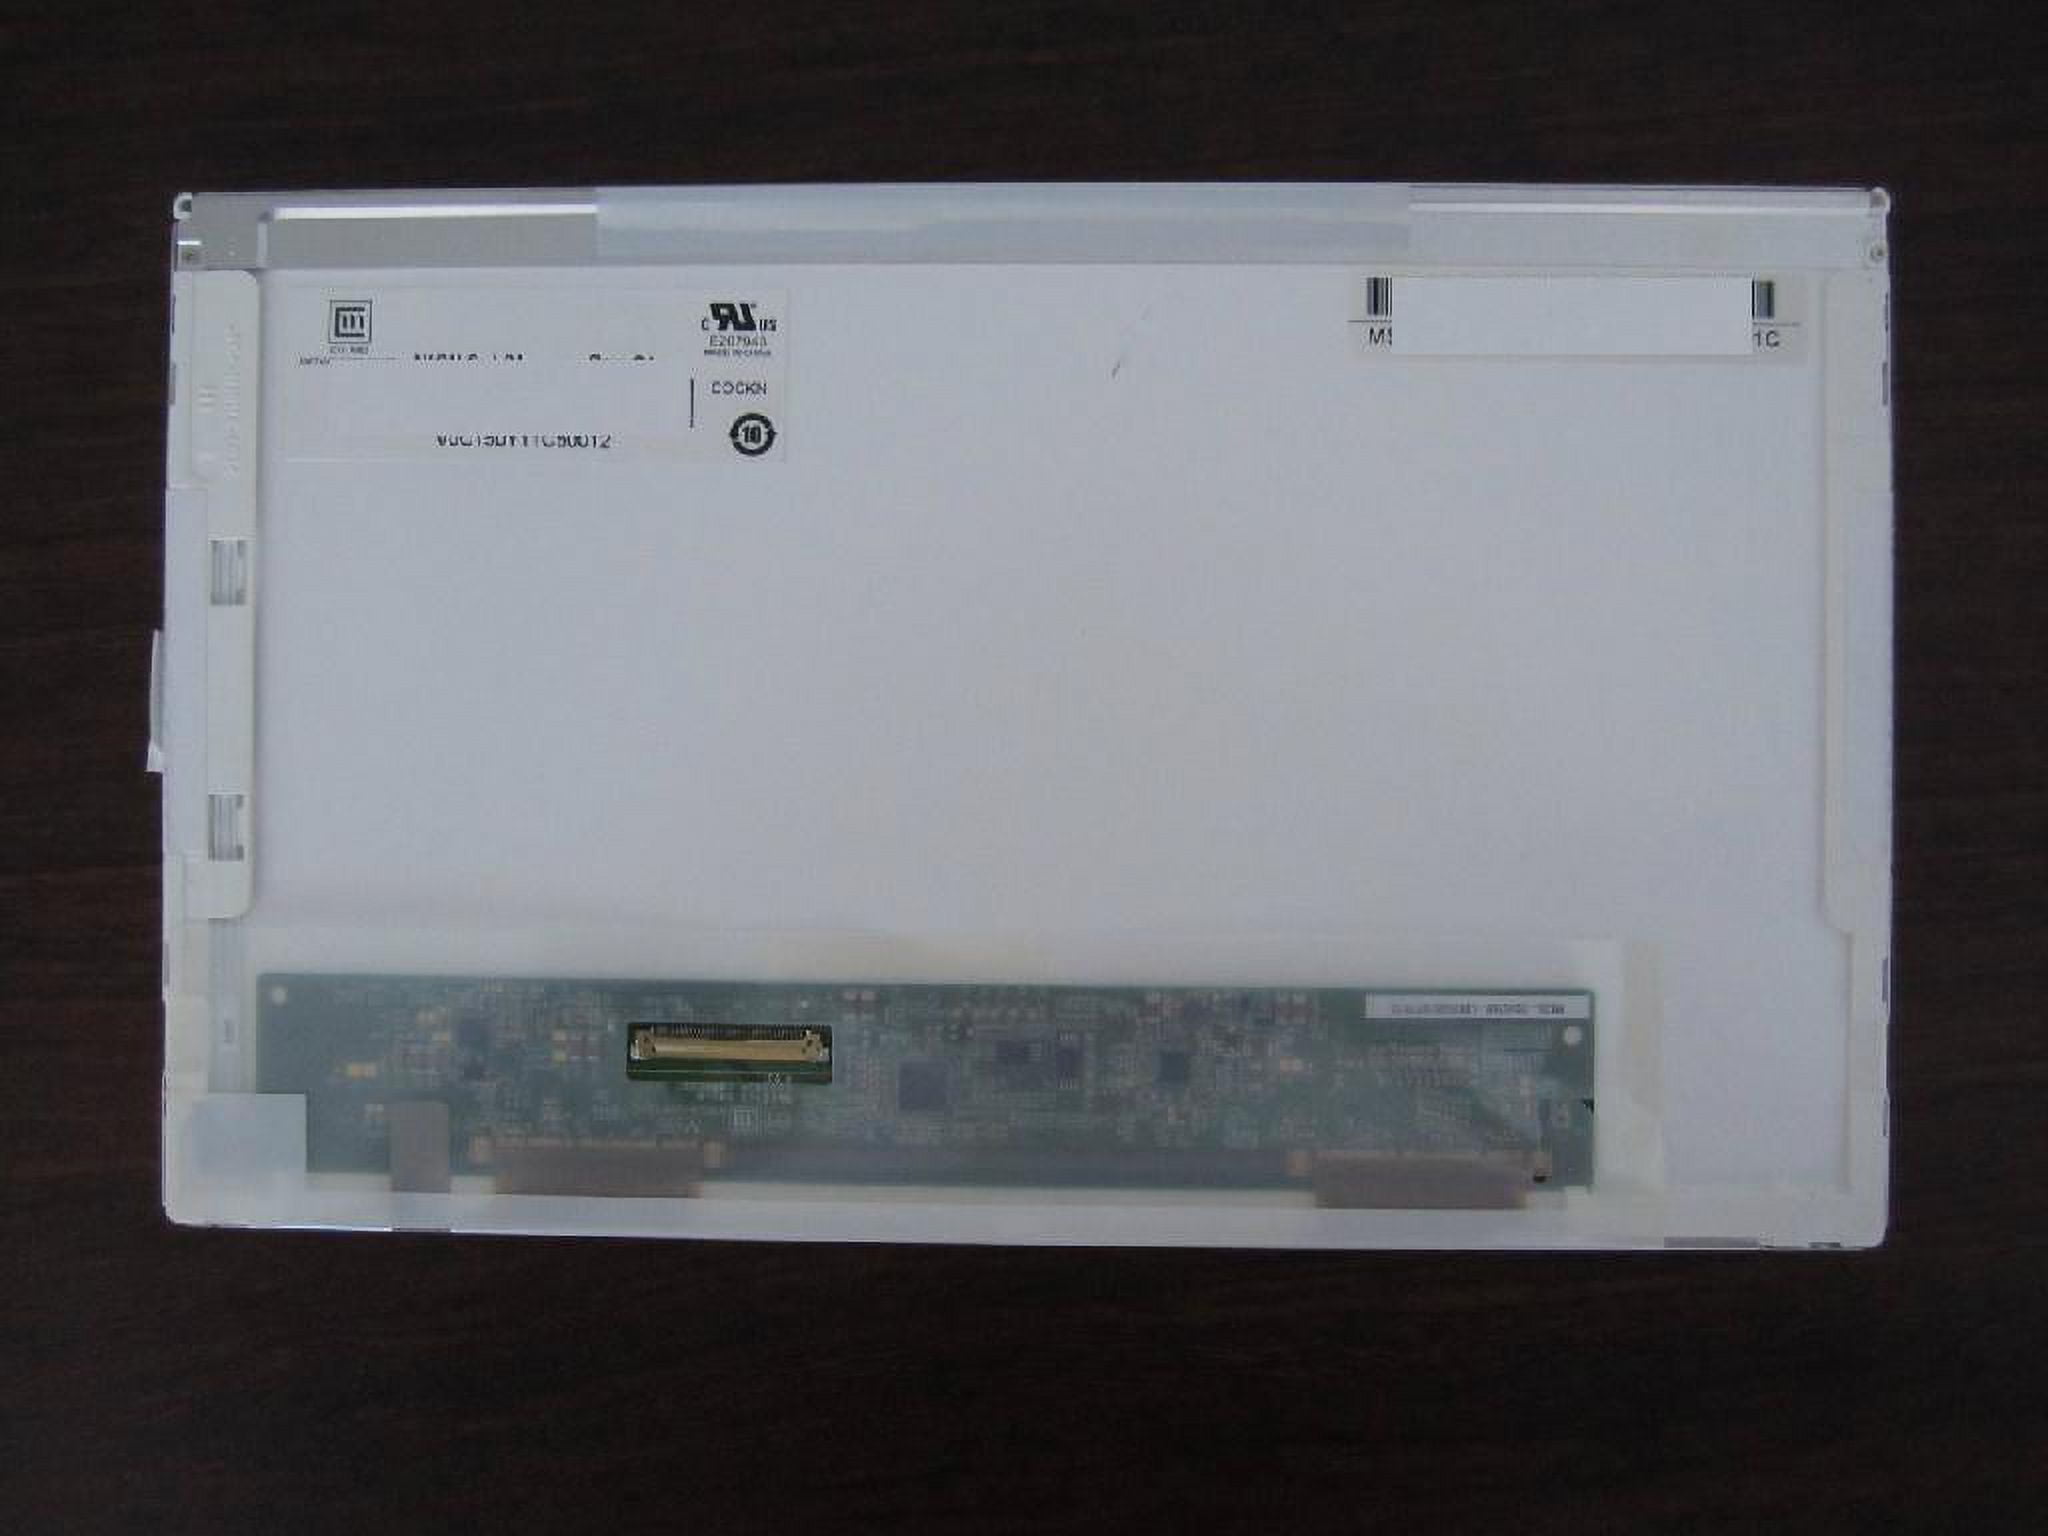 HP Mini 110-4250NR 10.1 Netbook Computer B5S14UA#ABA B&H Photo